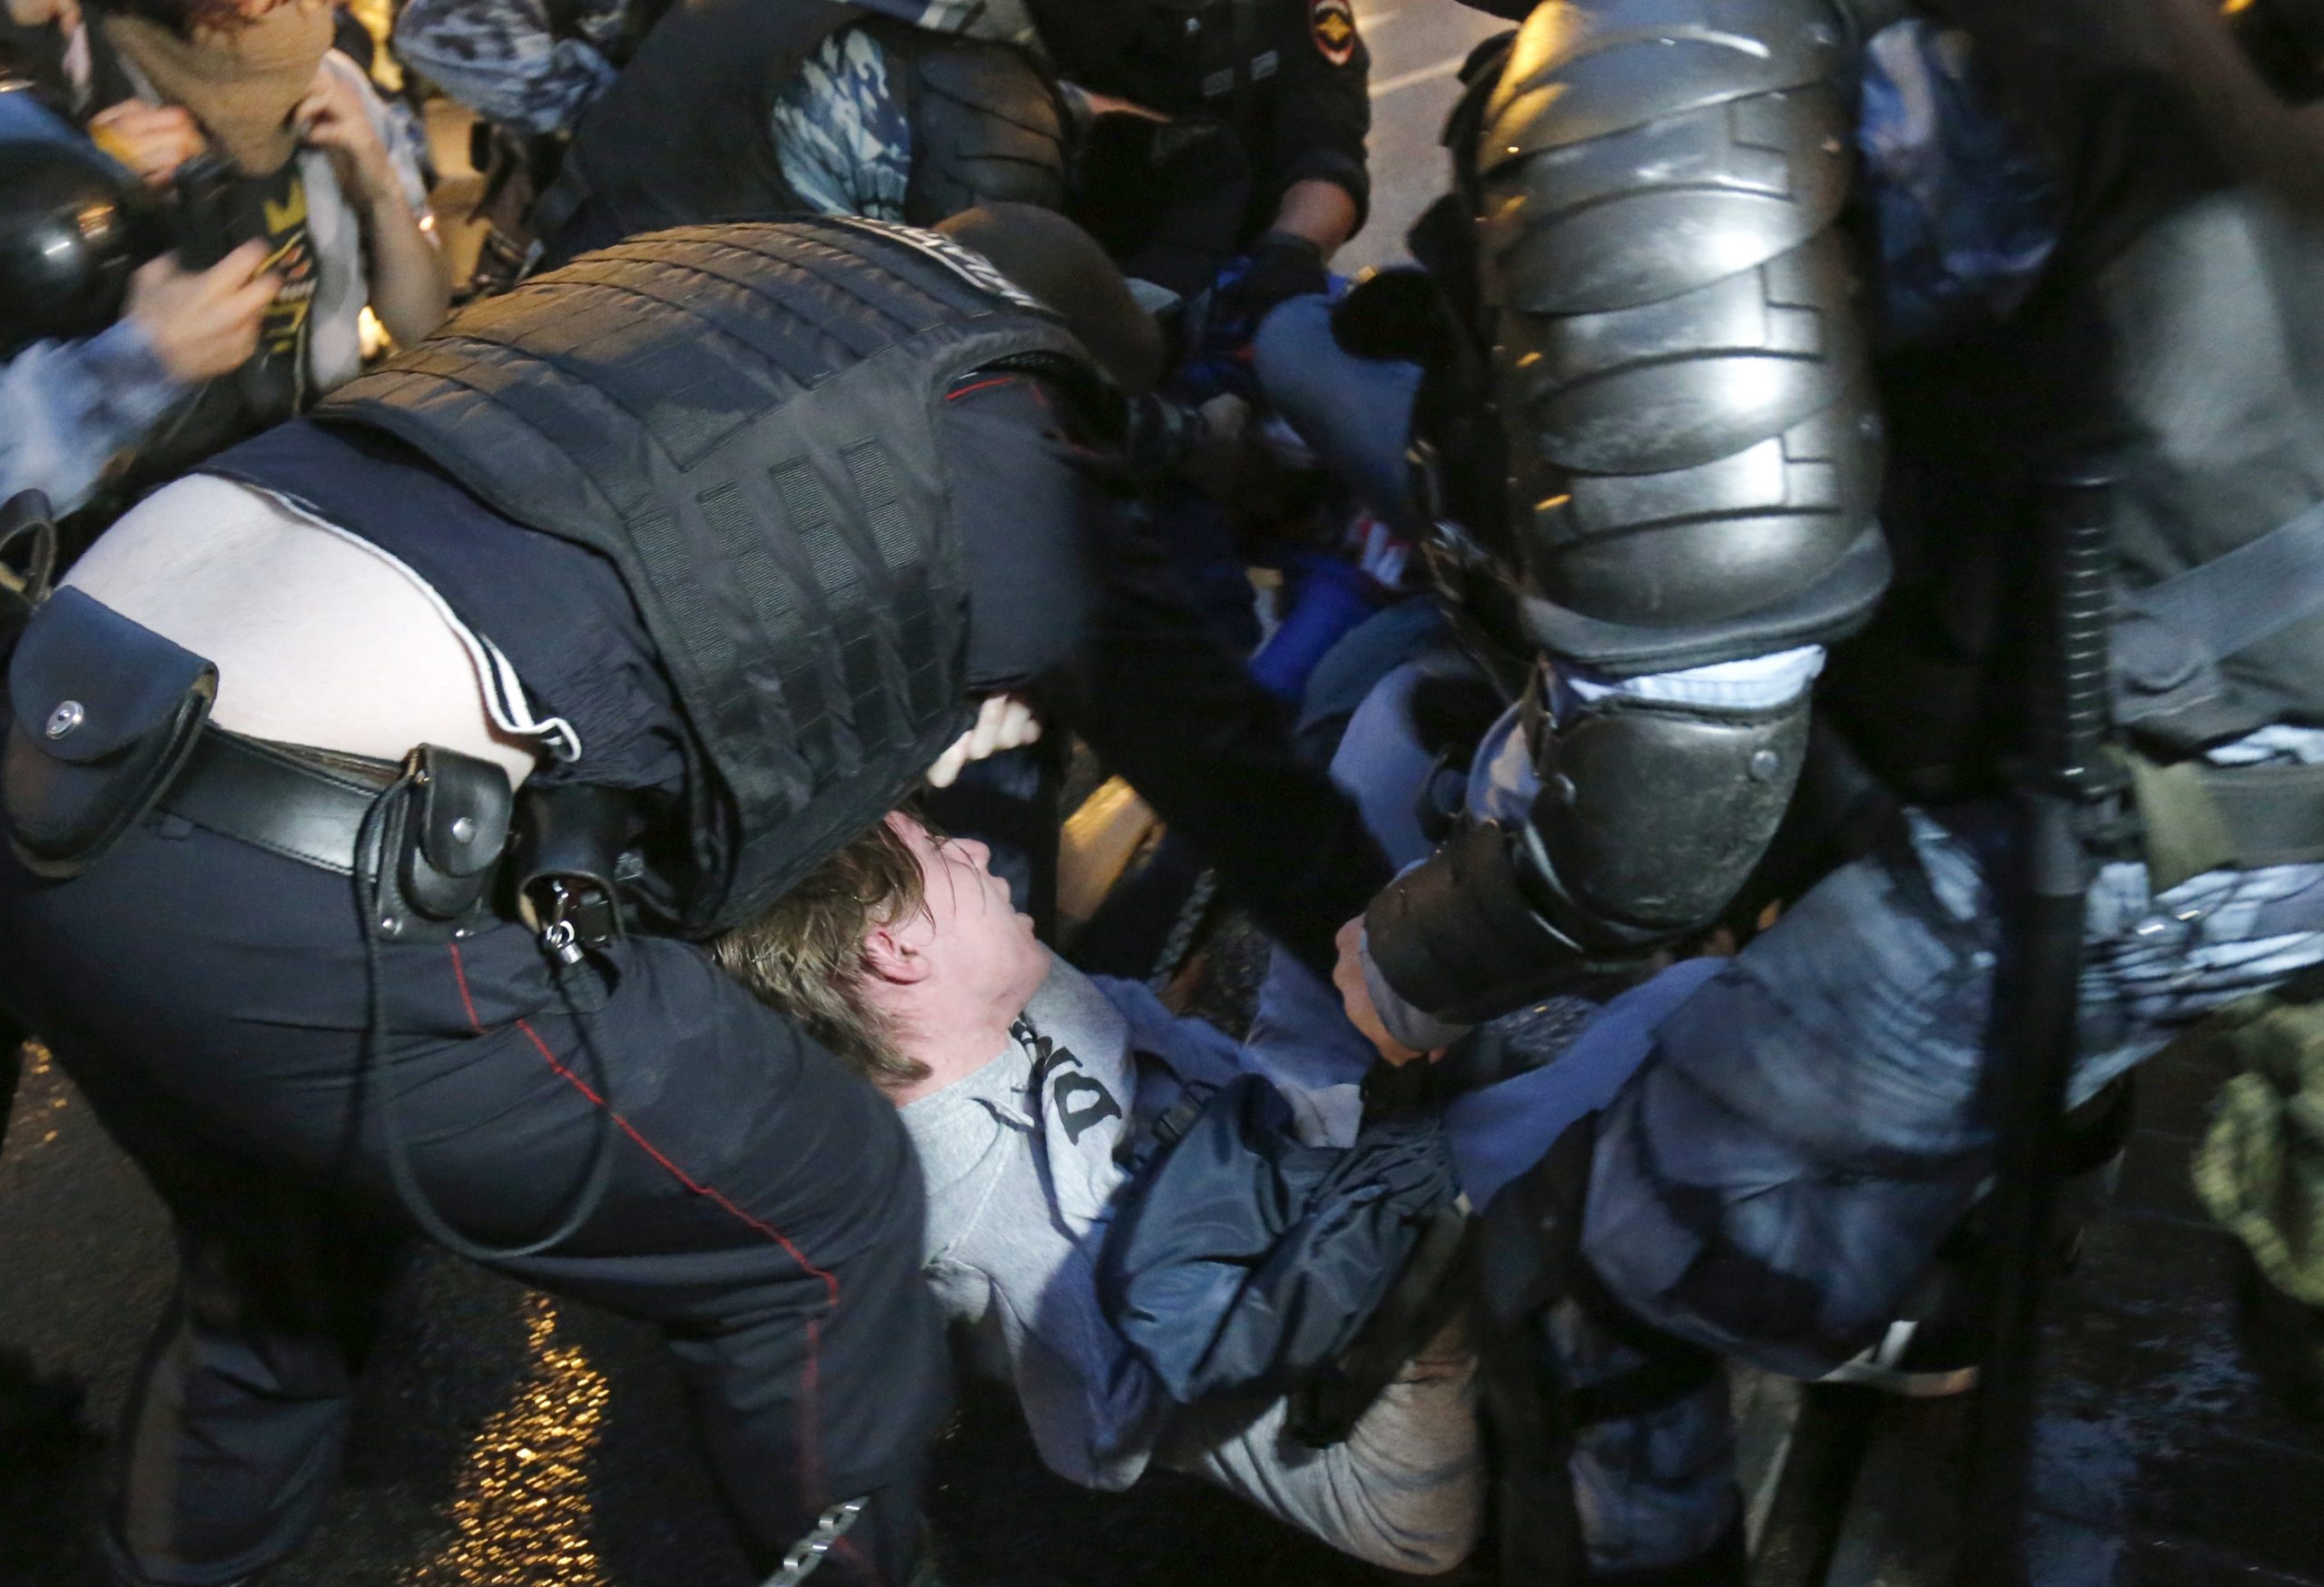 Некоторых участников митинга задерживали силой. Фото Alexander Zemlianichenko/AP/Scanpix/Leta